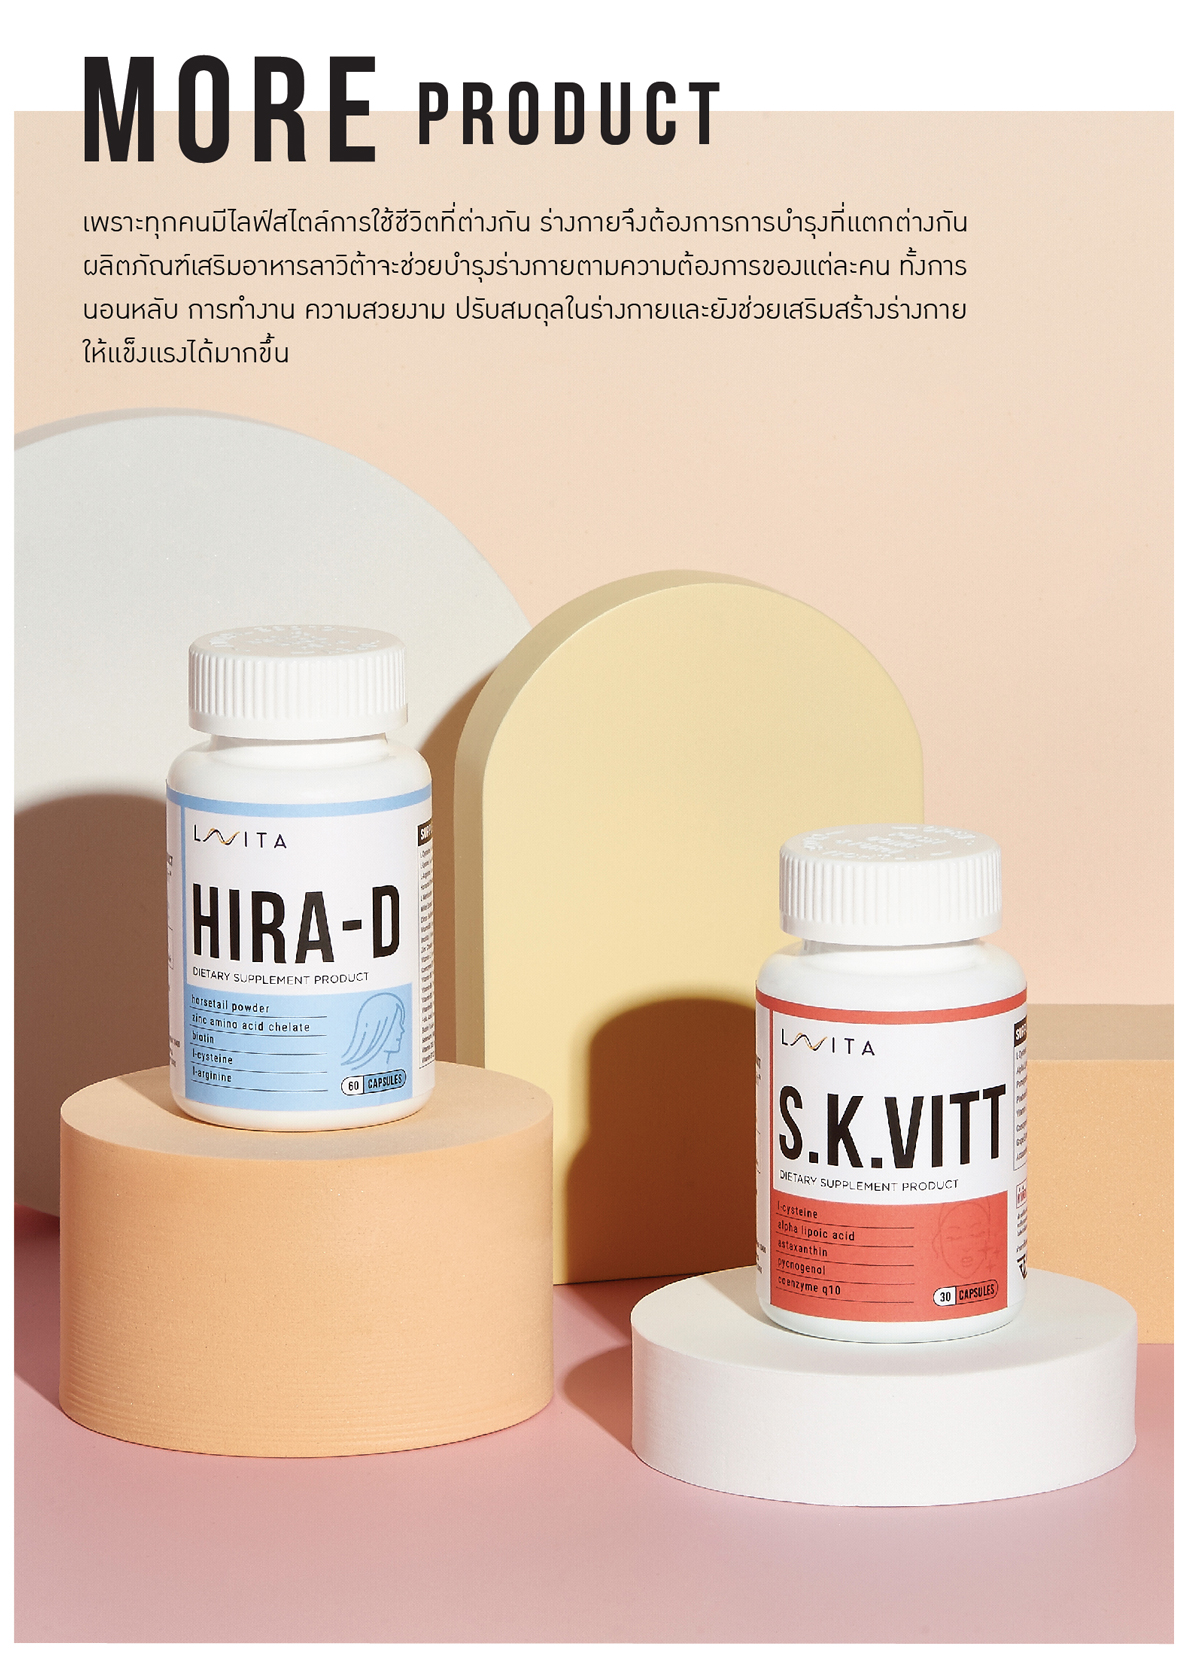 S.K.VITT Vitamin เพื่อผิวที่แลดูเปล่งปลั่งและสุขภาพดี